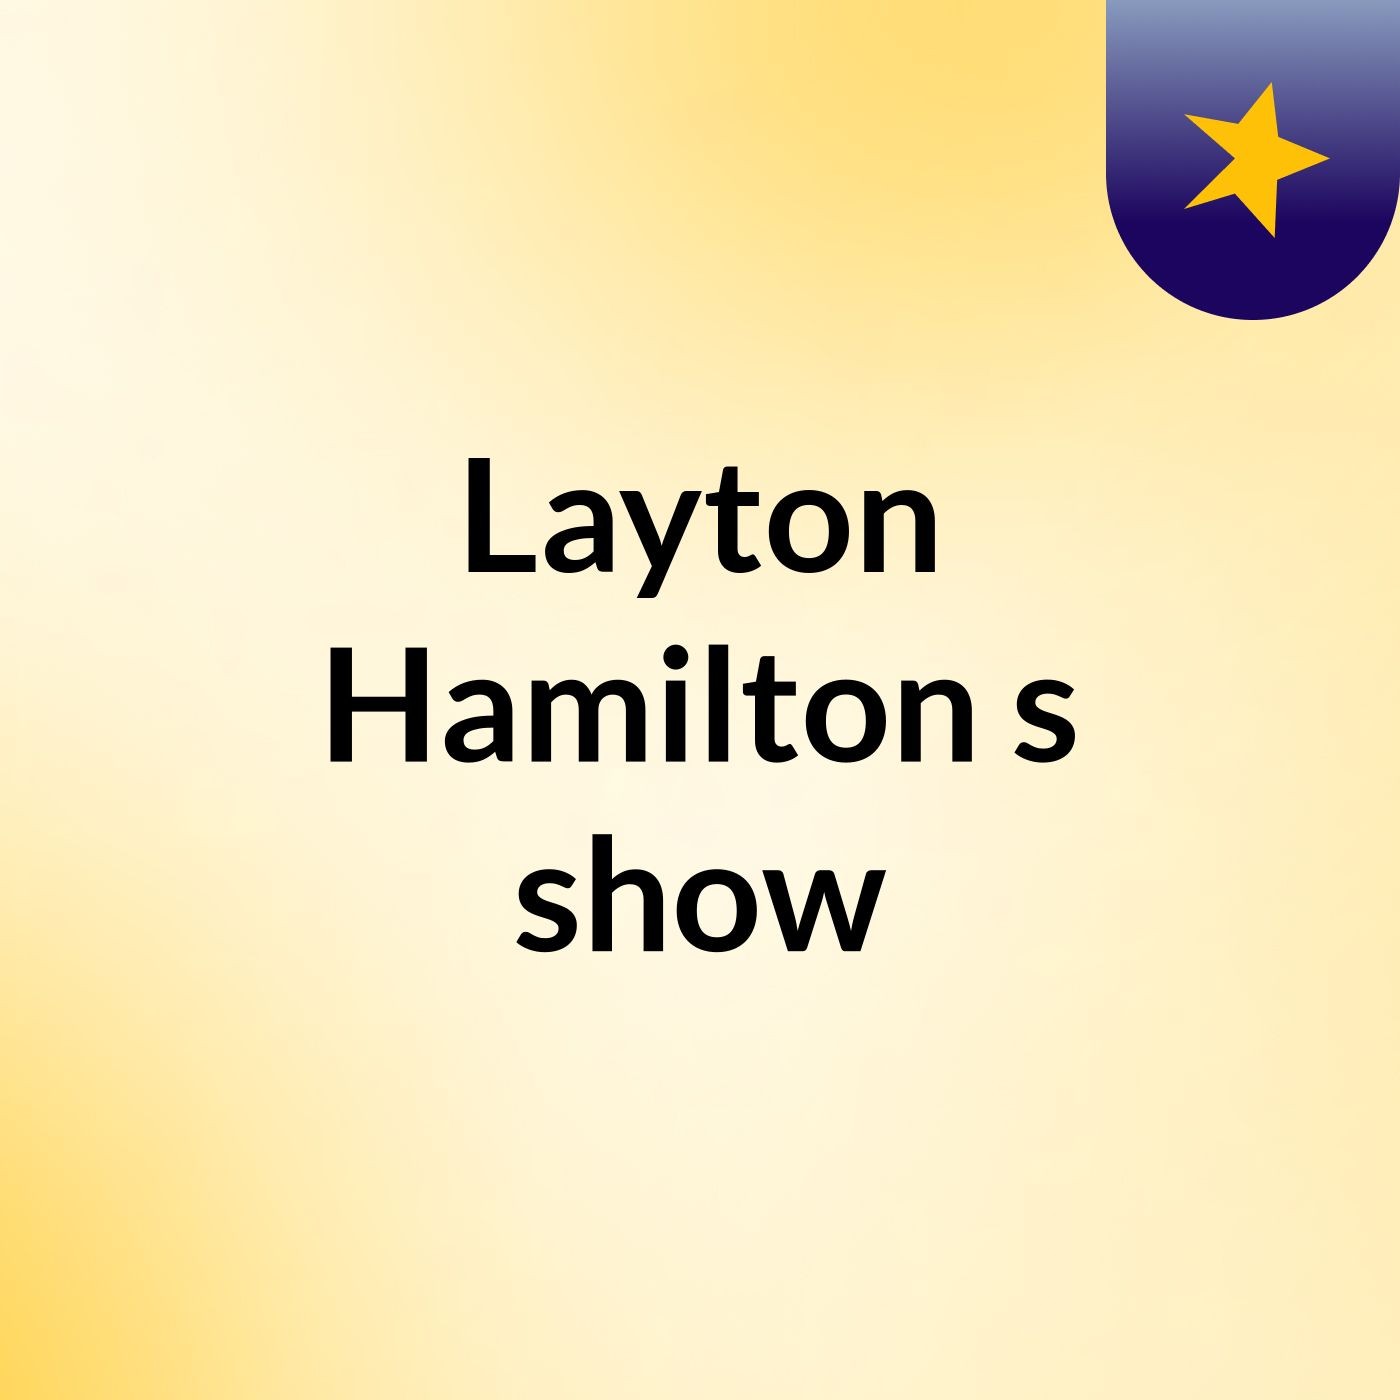 Layton Hamilton's show